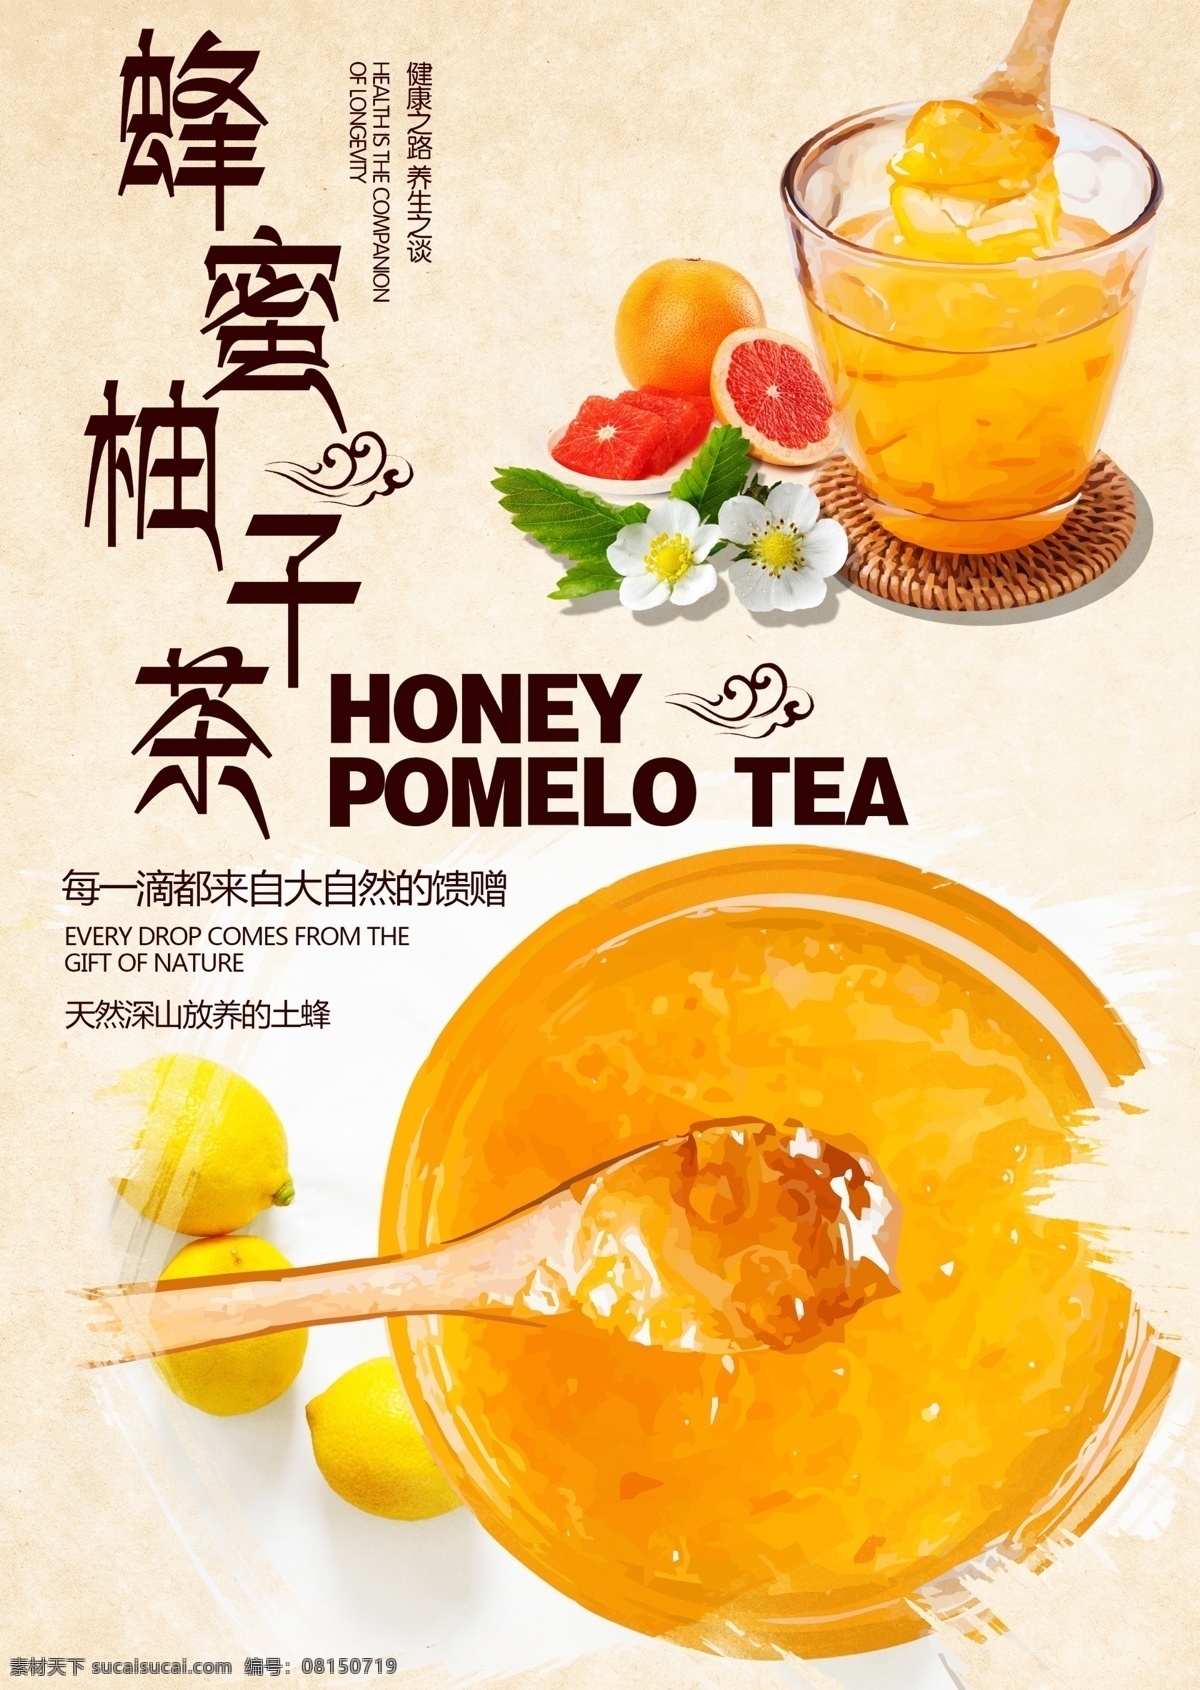 蜂蜜 柚子 茶 海报 食品饮料海报 夏日饮料 蜂蜜柚子茶